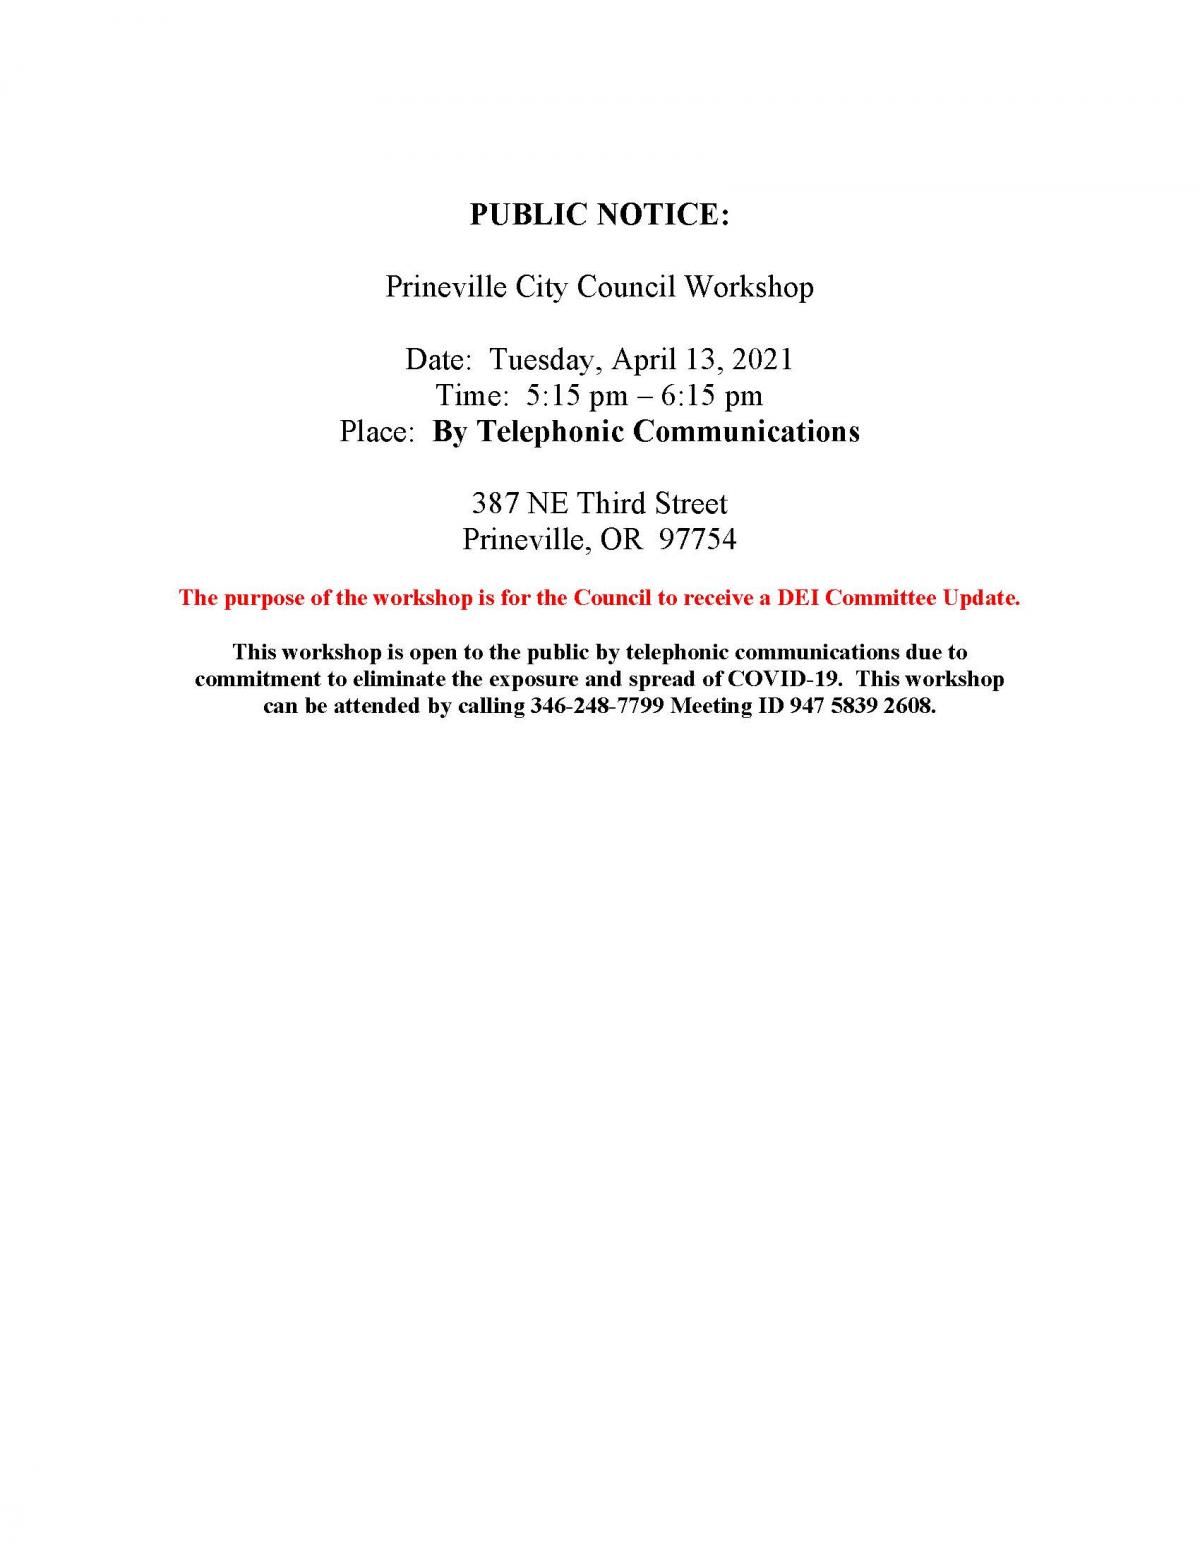 Public Notice - Council Workshop 4-13-2021